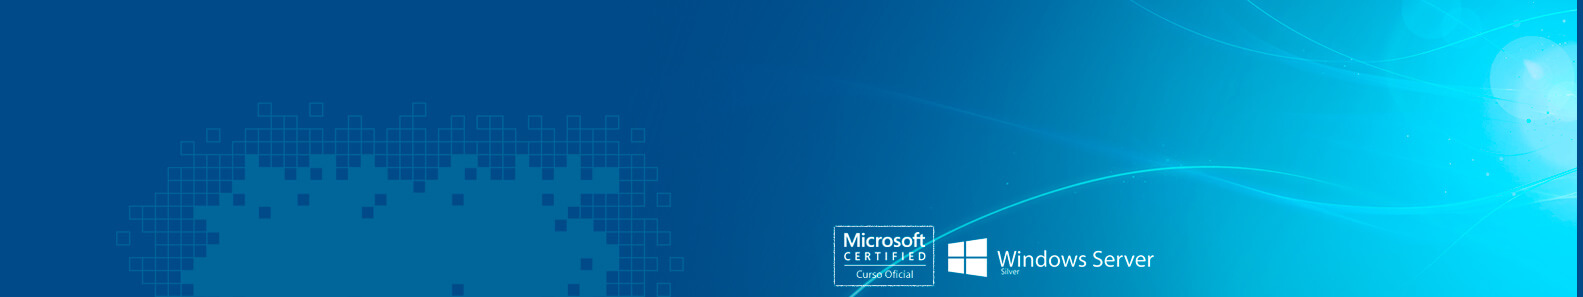 Curso Installing and Configuring Windows Server 2012 (20410) Adquiere las habilidades y conocimientos necesarios para implementar una infraestructura de Windows Server 2012 en un entorno empresarial